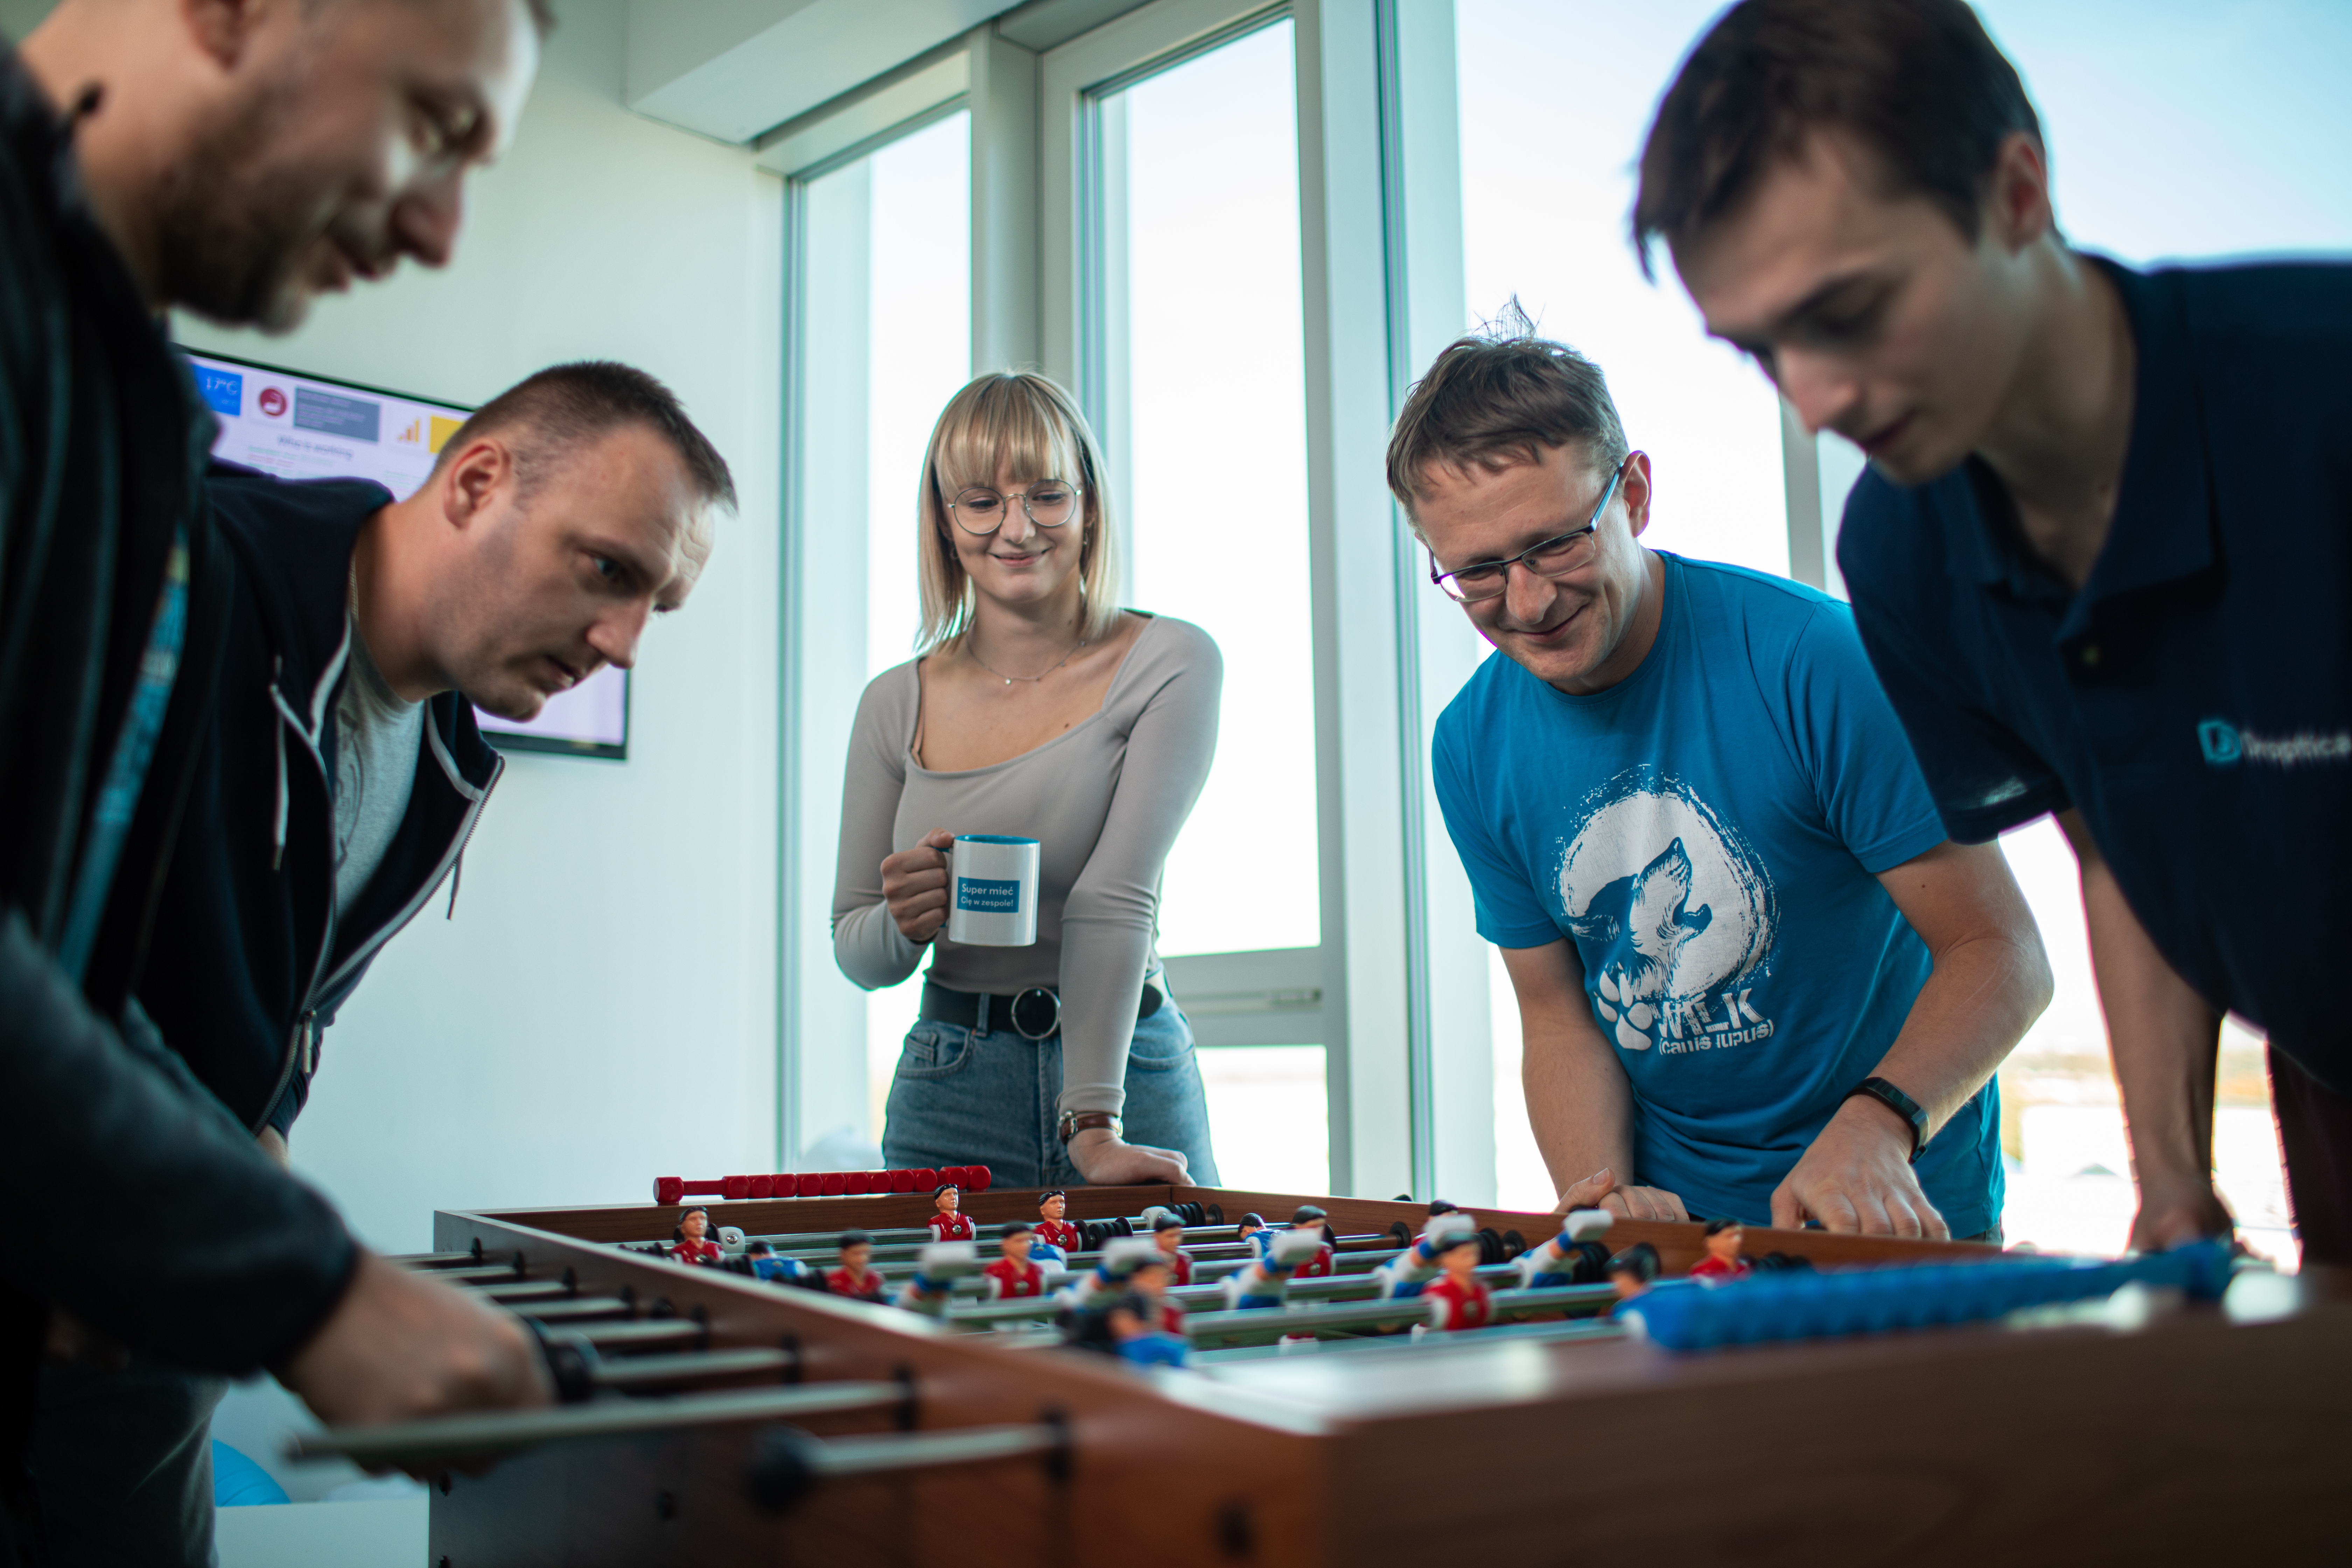 Pracownicy Droptica integrują się grając w piłkarzyki